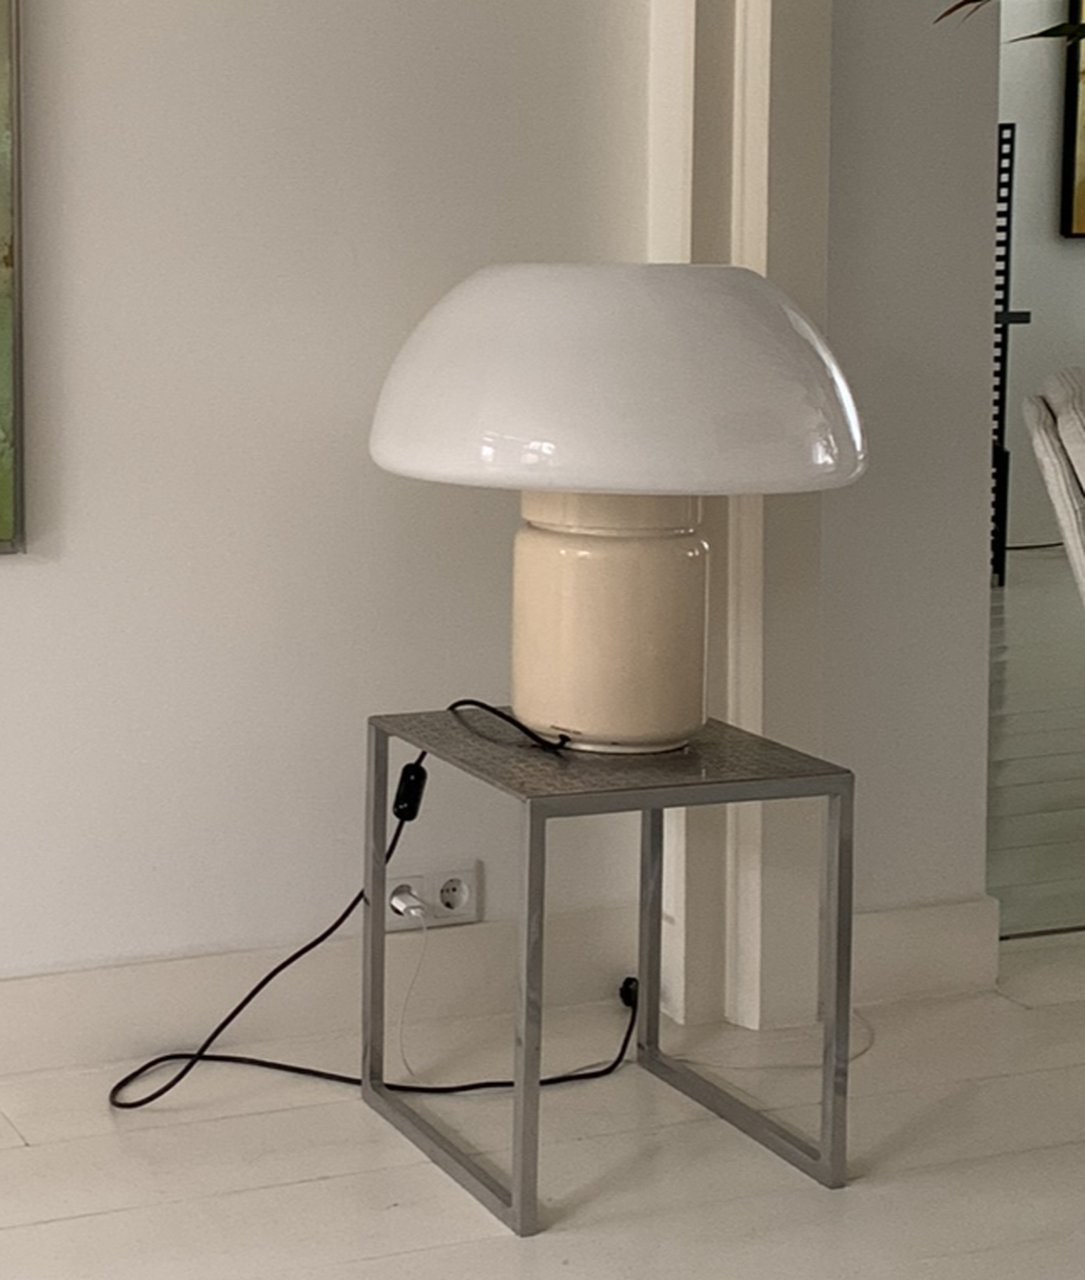 Image 5 of Elio mushroom lamp white.